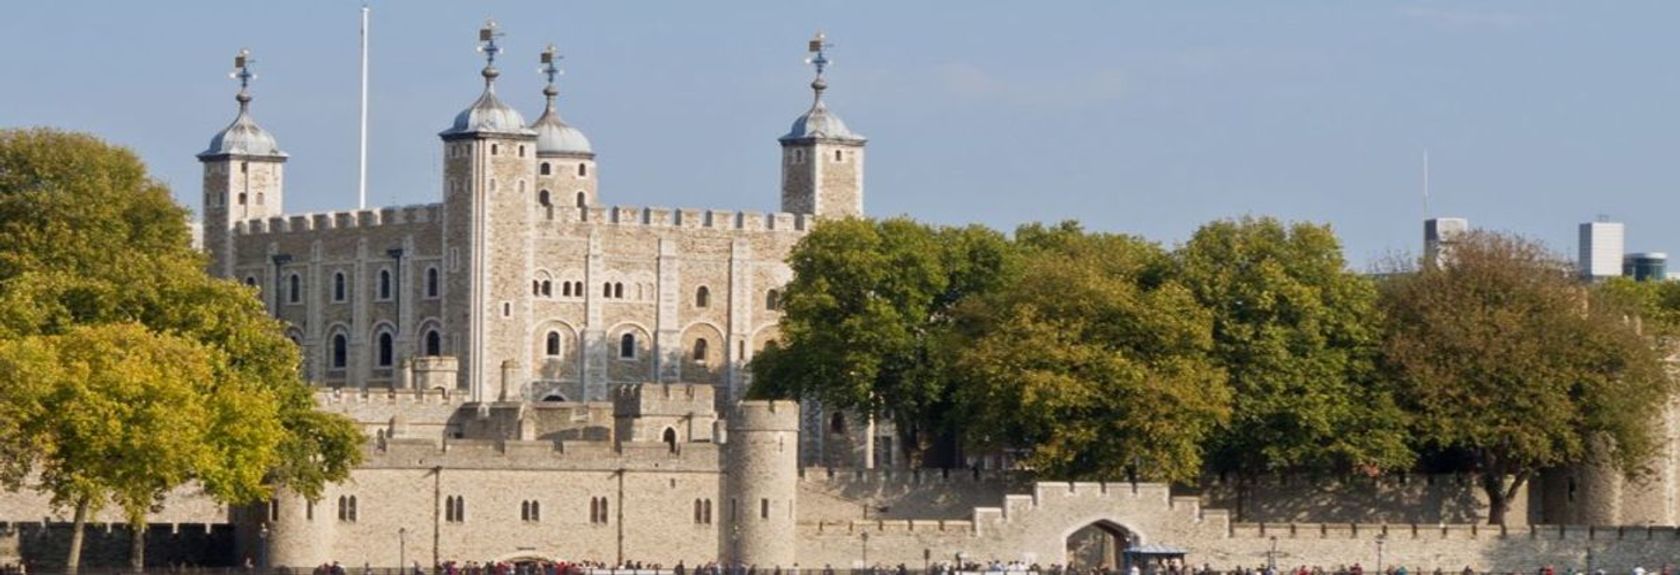 Tower of London - o lugar onde tudo isso acontece. Foi aqui que culminou a intriga política, onde outrora ocorreram decapitações sangrentas e também o lugar que ainda hoje abriga uma inestimável coleção de jóias da coroa.